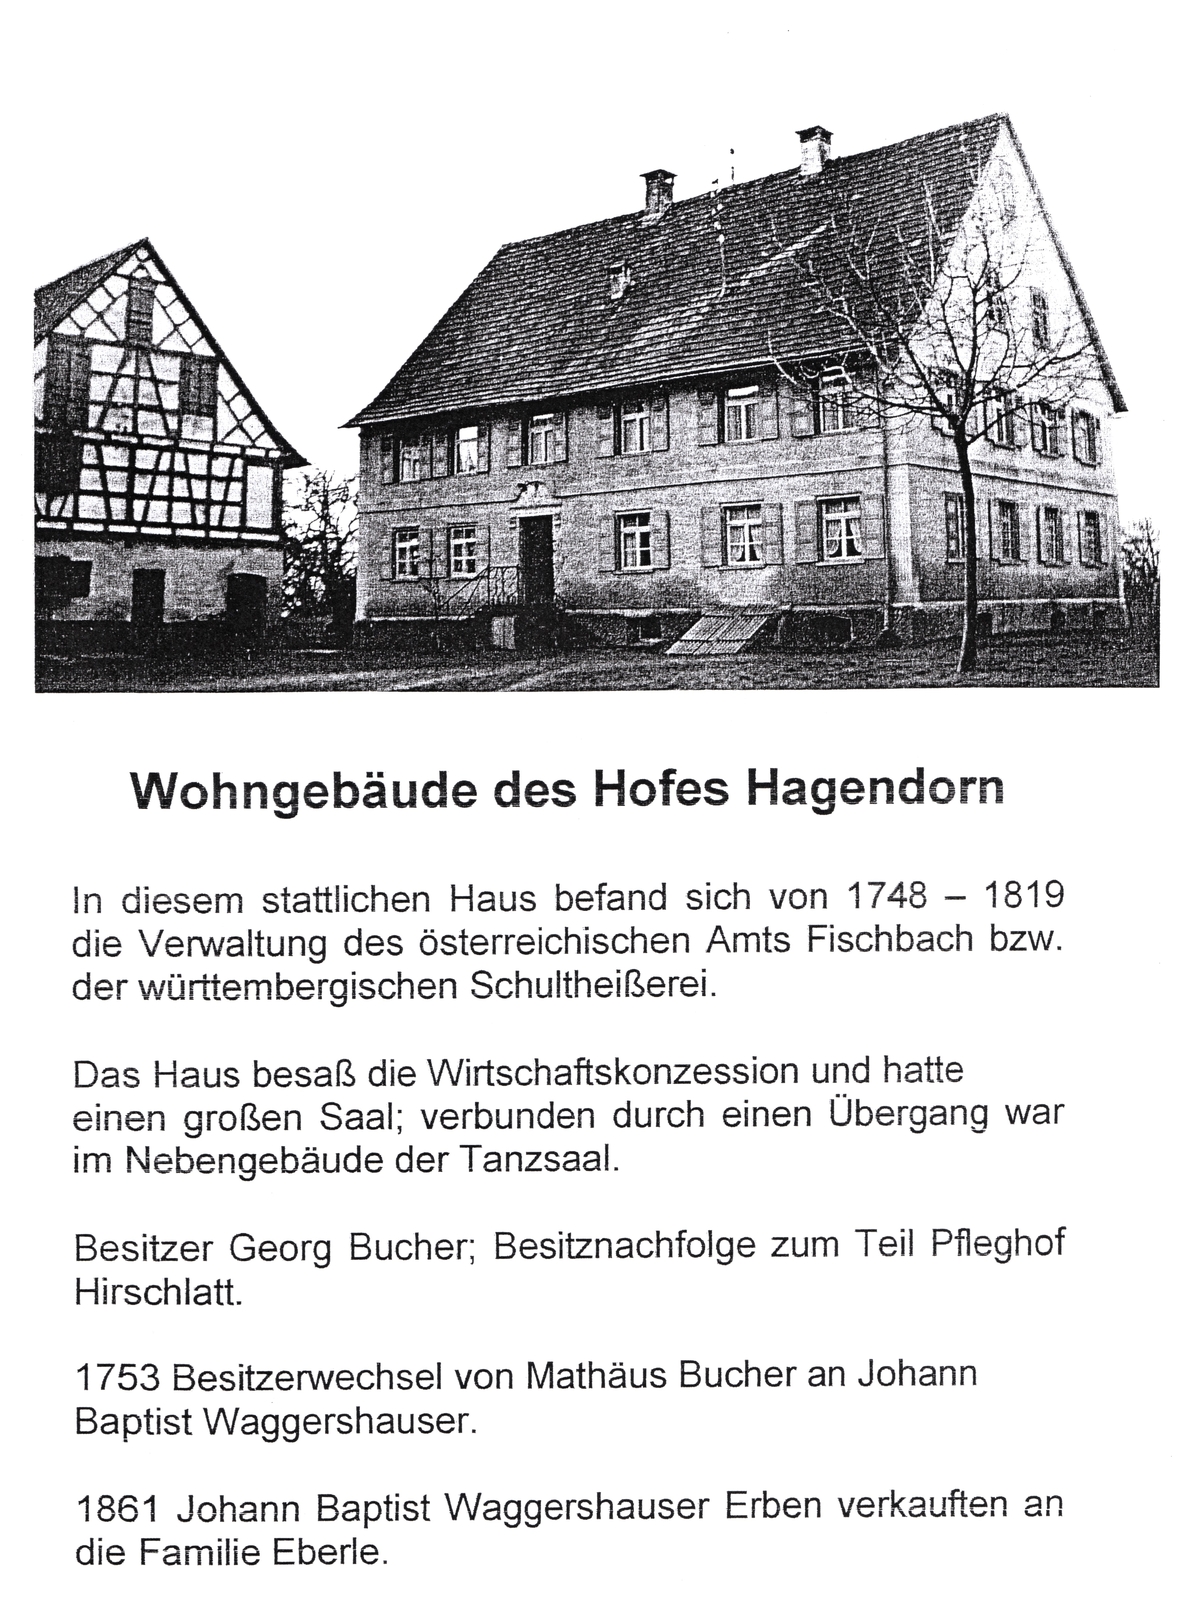 Geschichte Hagendorn